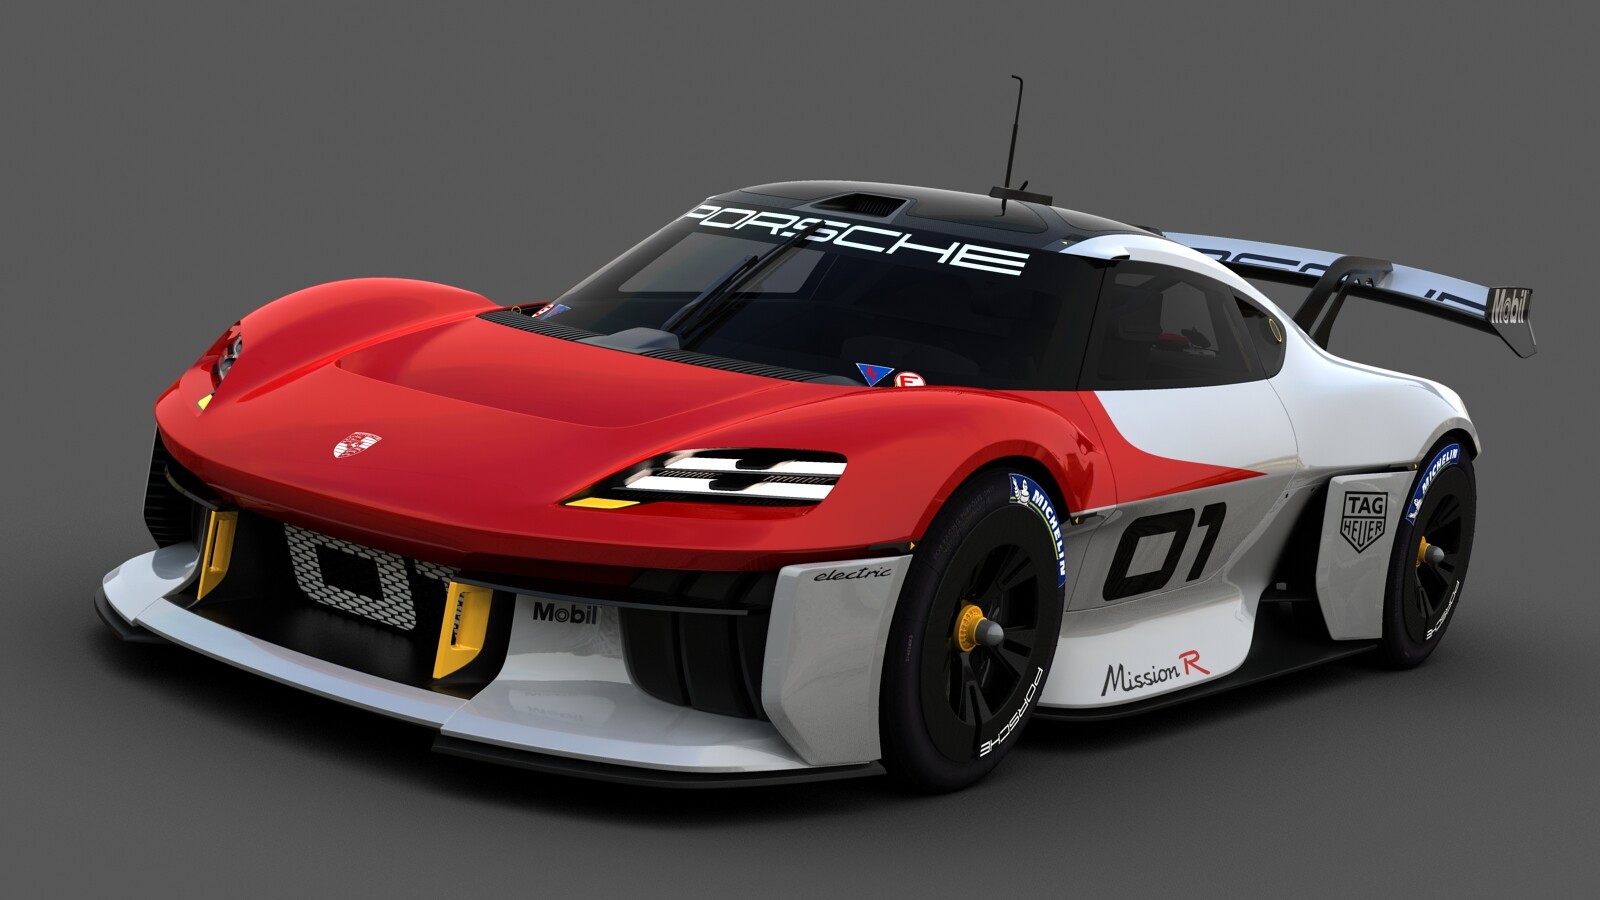 ArtStation - Porsche Mission R Concept 2021